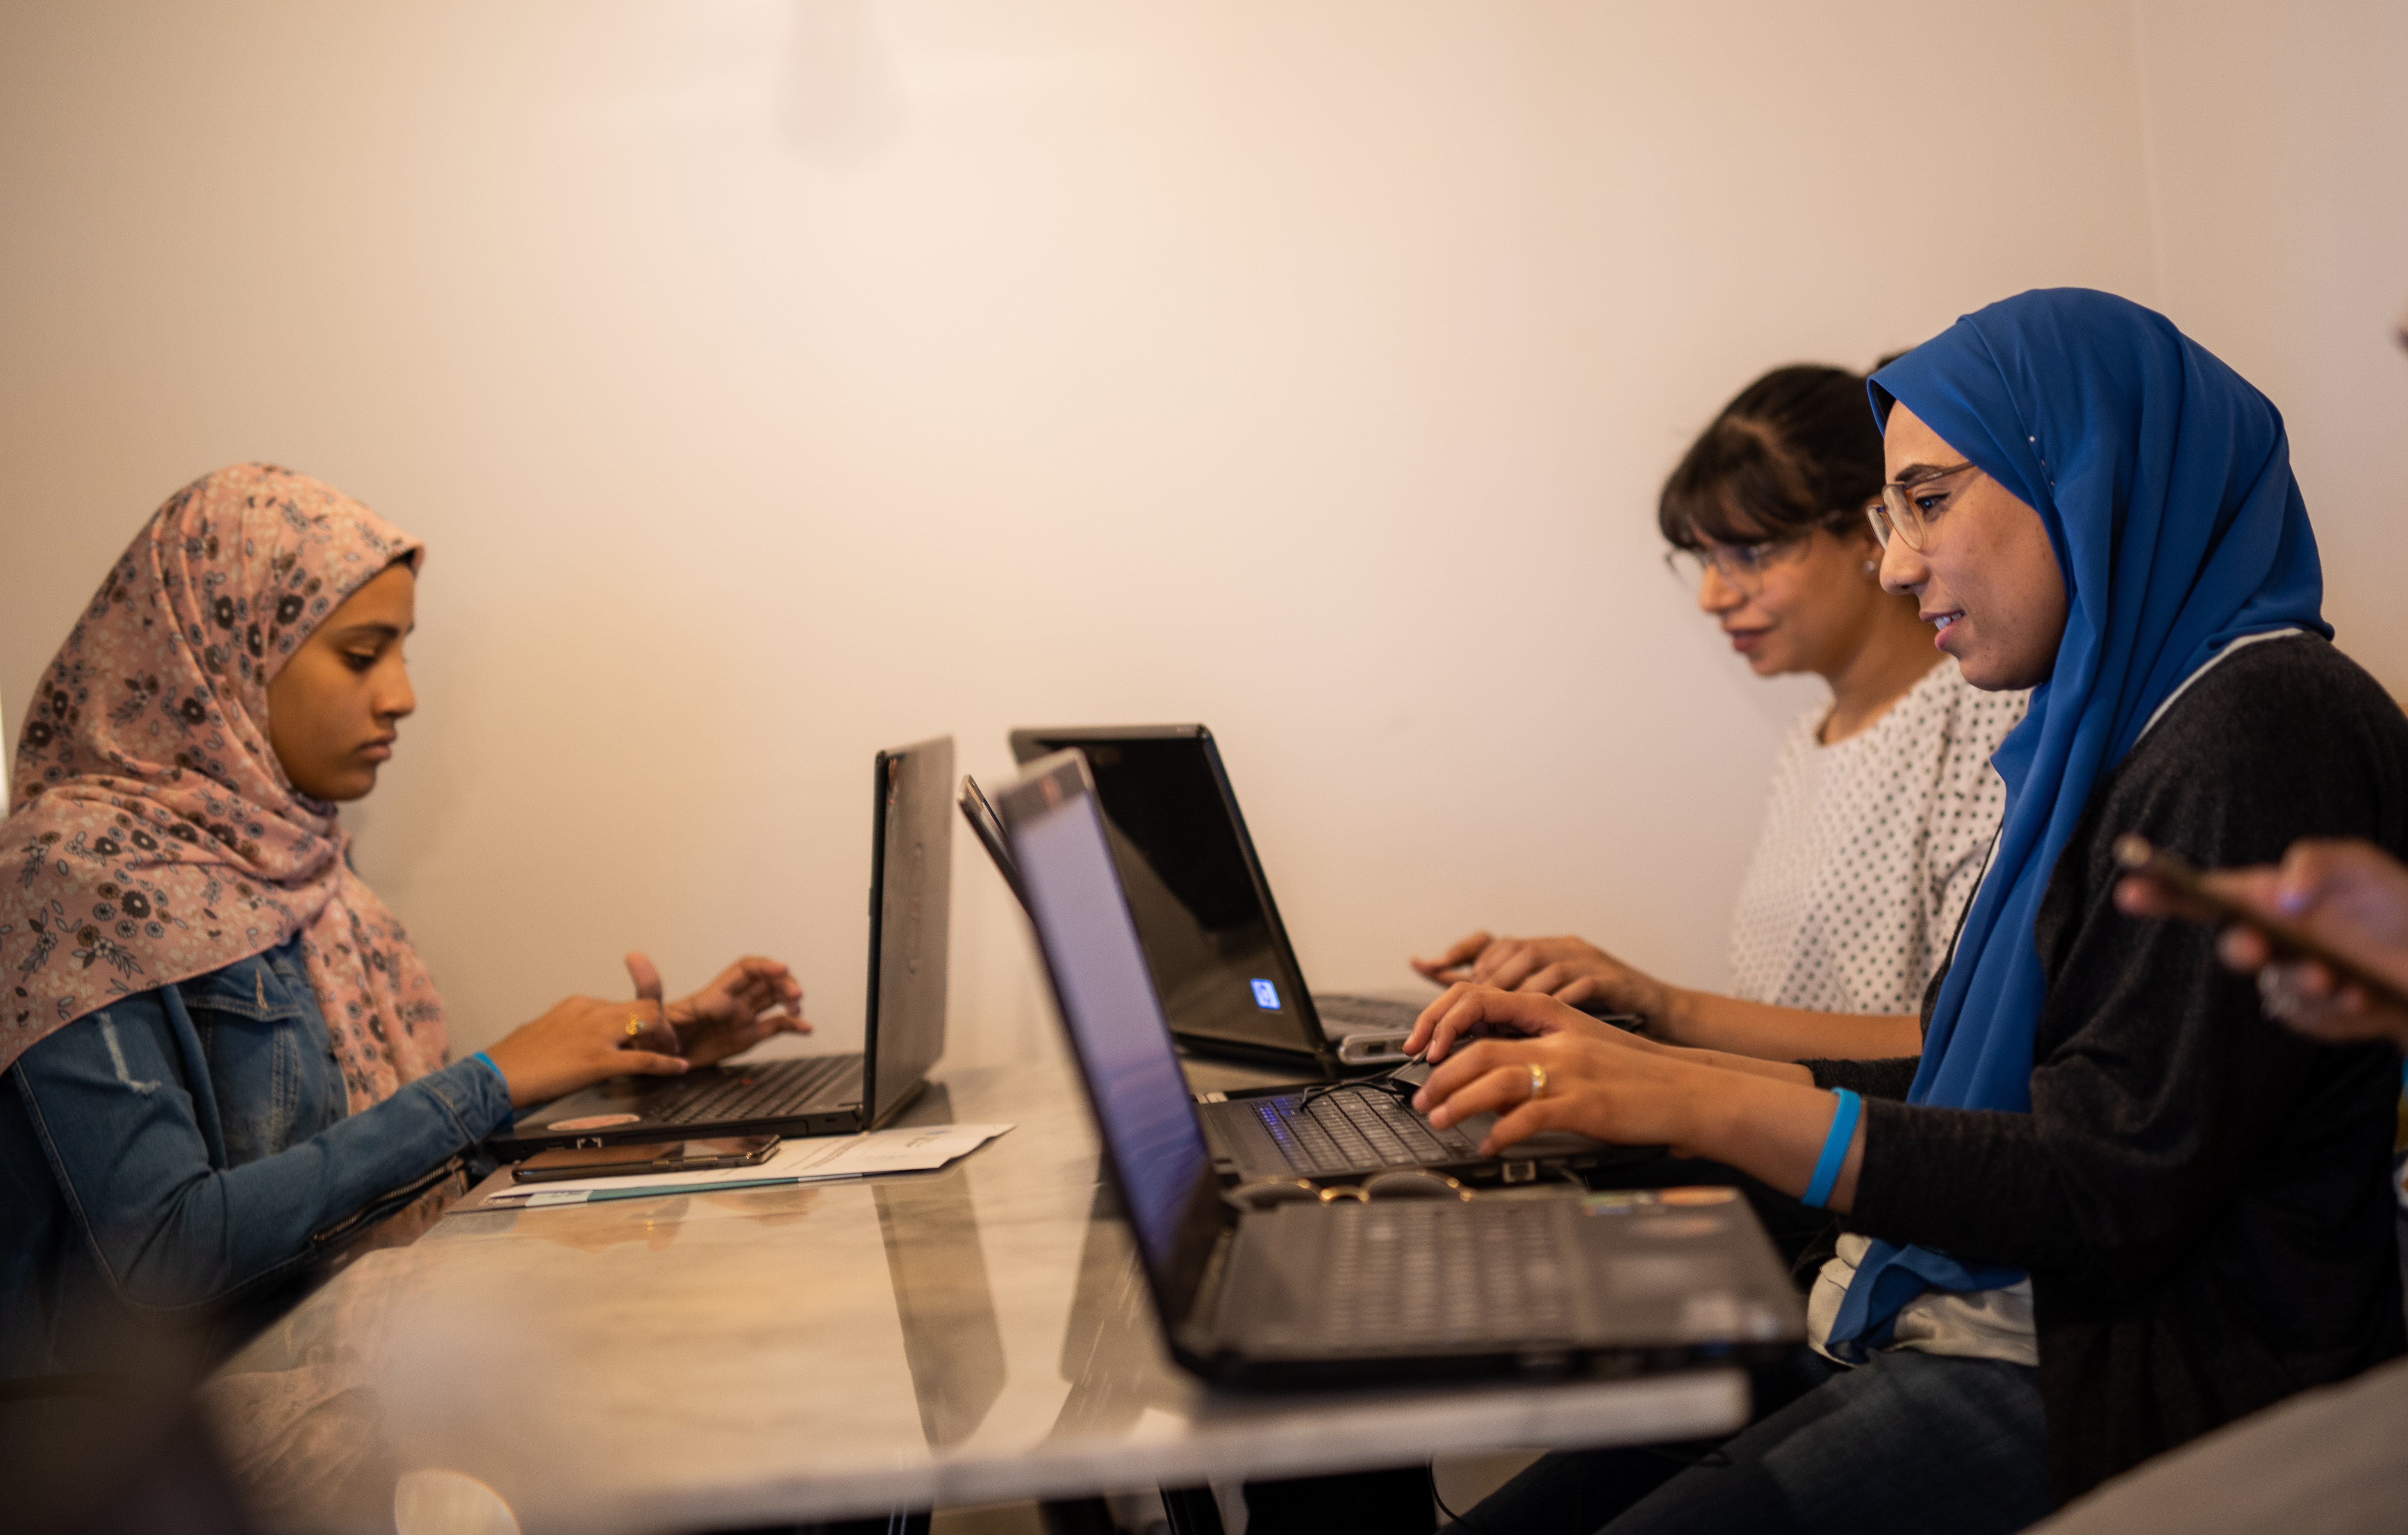 نساء متطوعات في مبادرة “قصتها” الشبابية، التي تنشر معلومات المساواة بين كلا الجنسين في المنطقة العربية